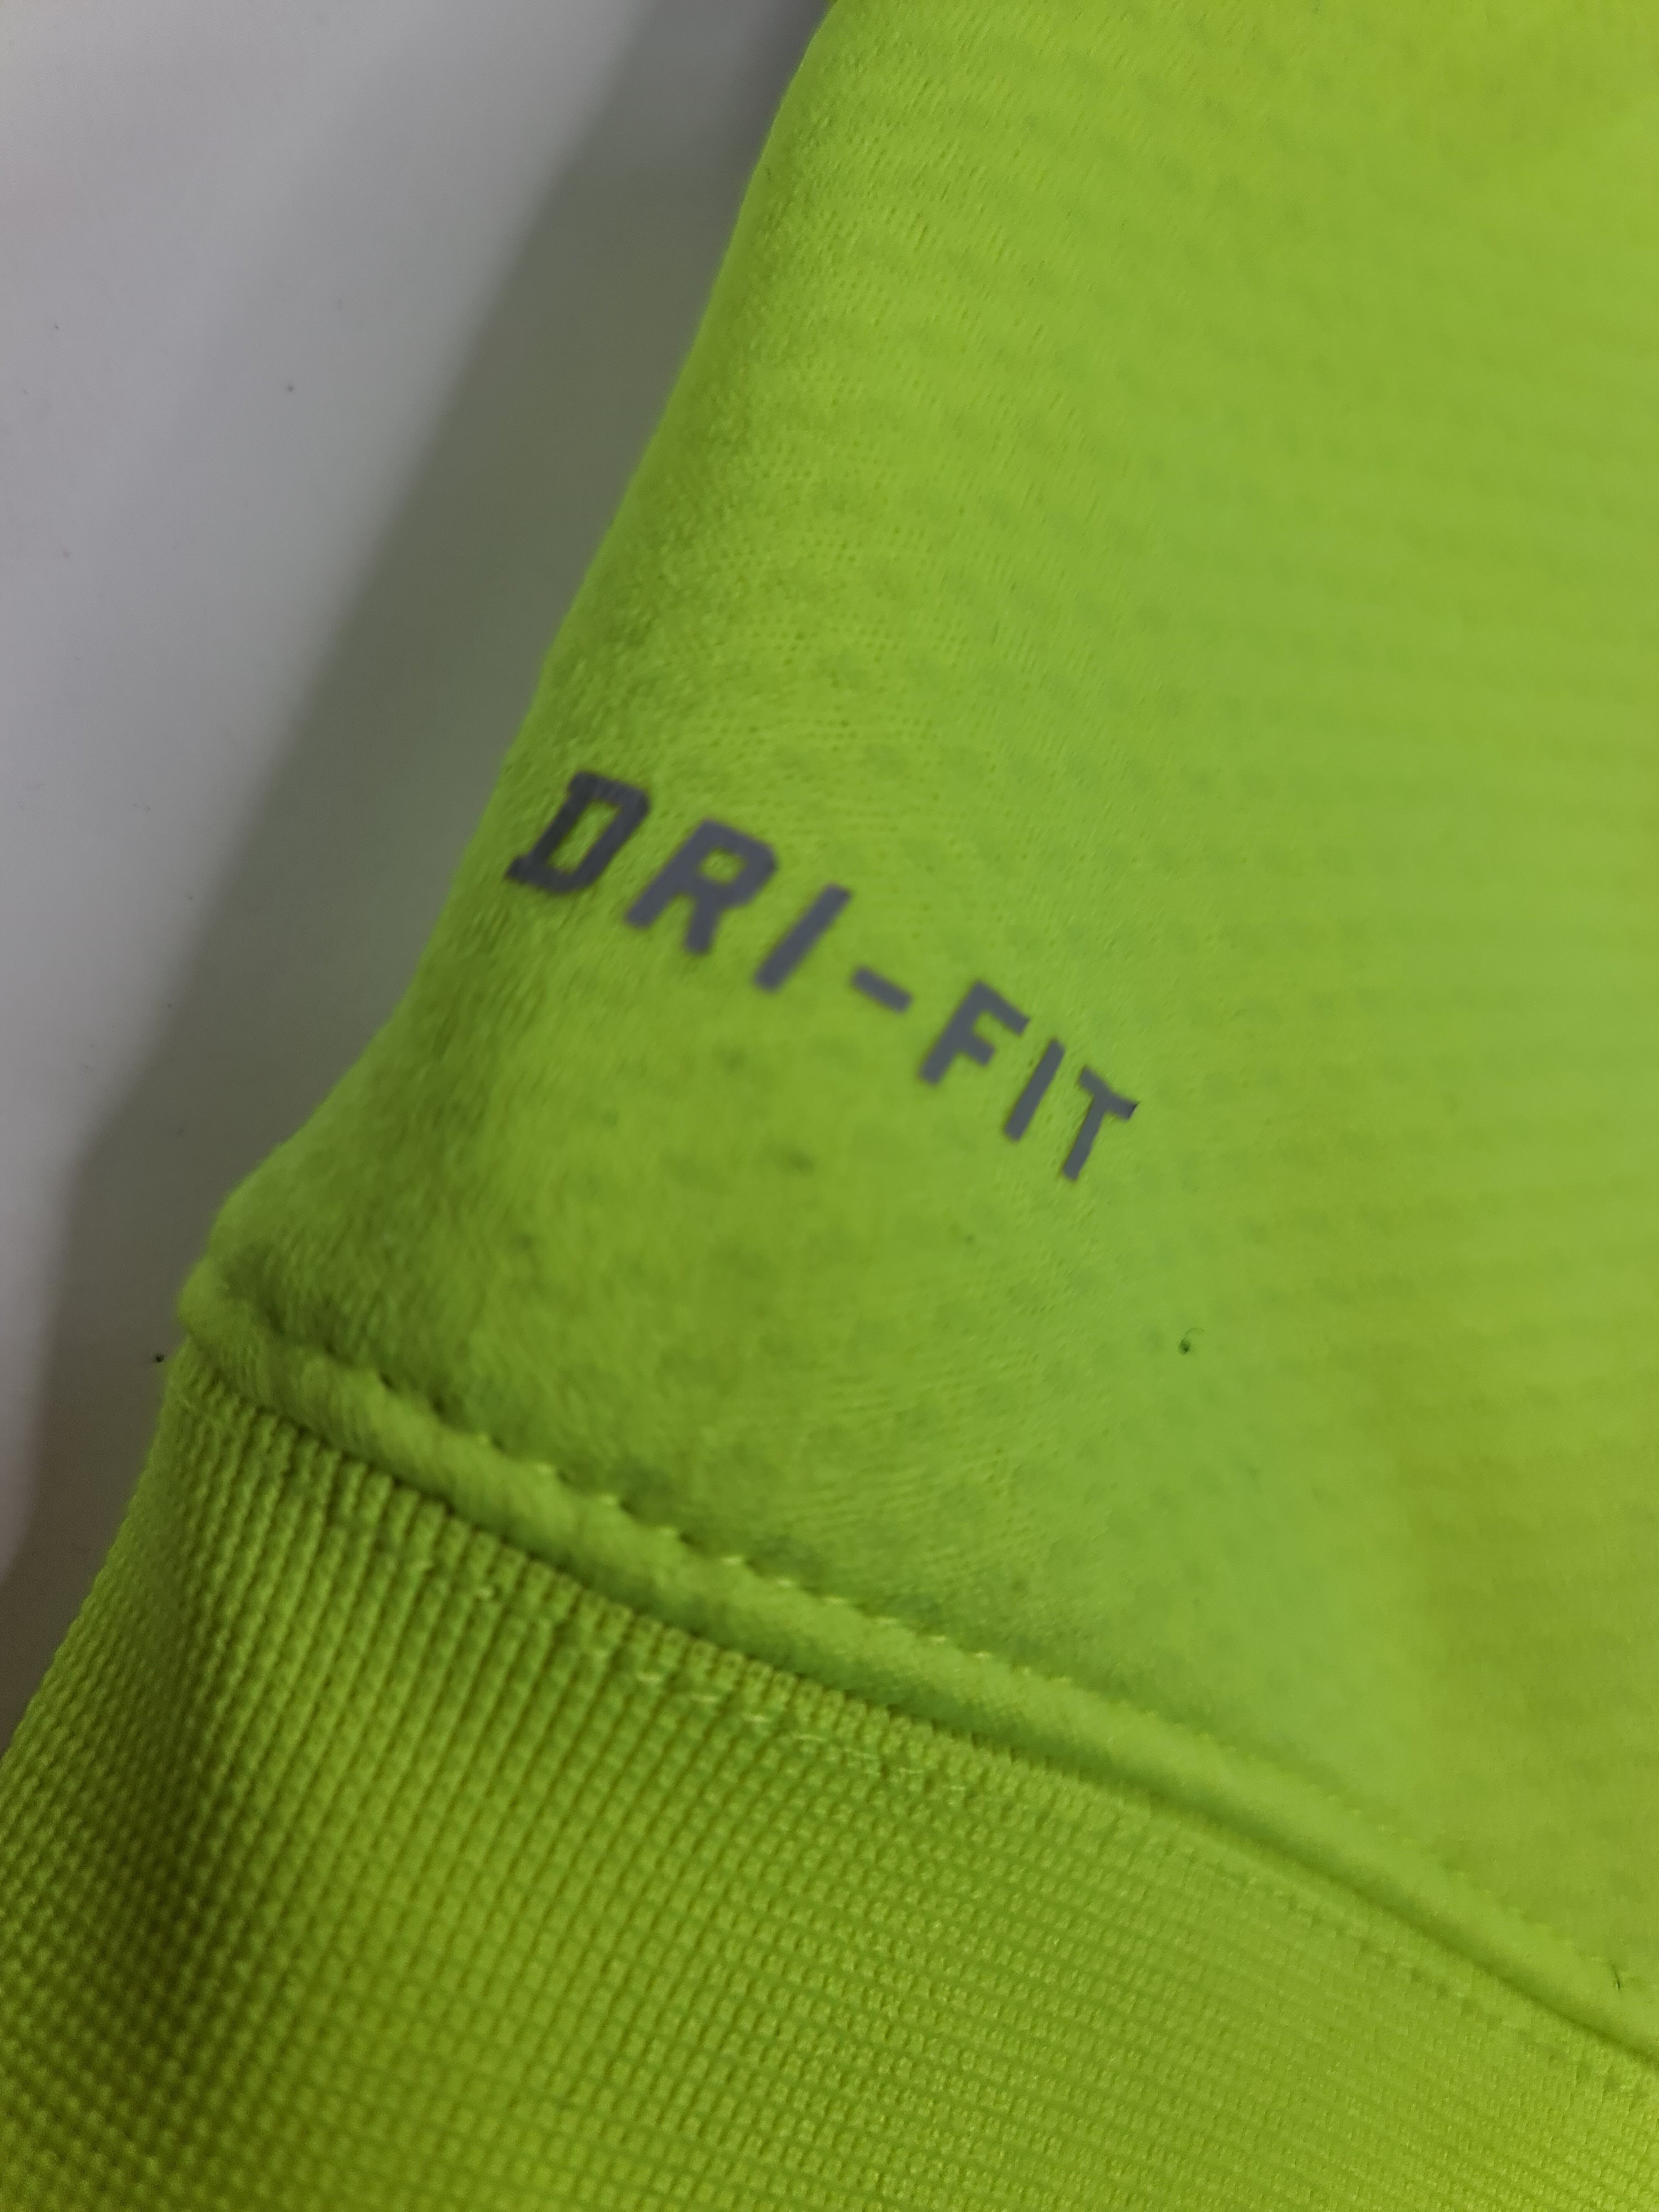 Suéter de mujer marca Nike - (Talla: S/P) Amarillo